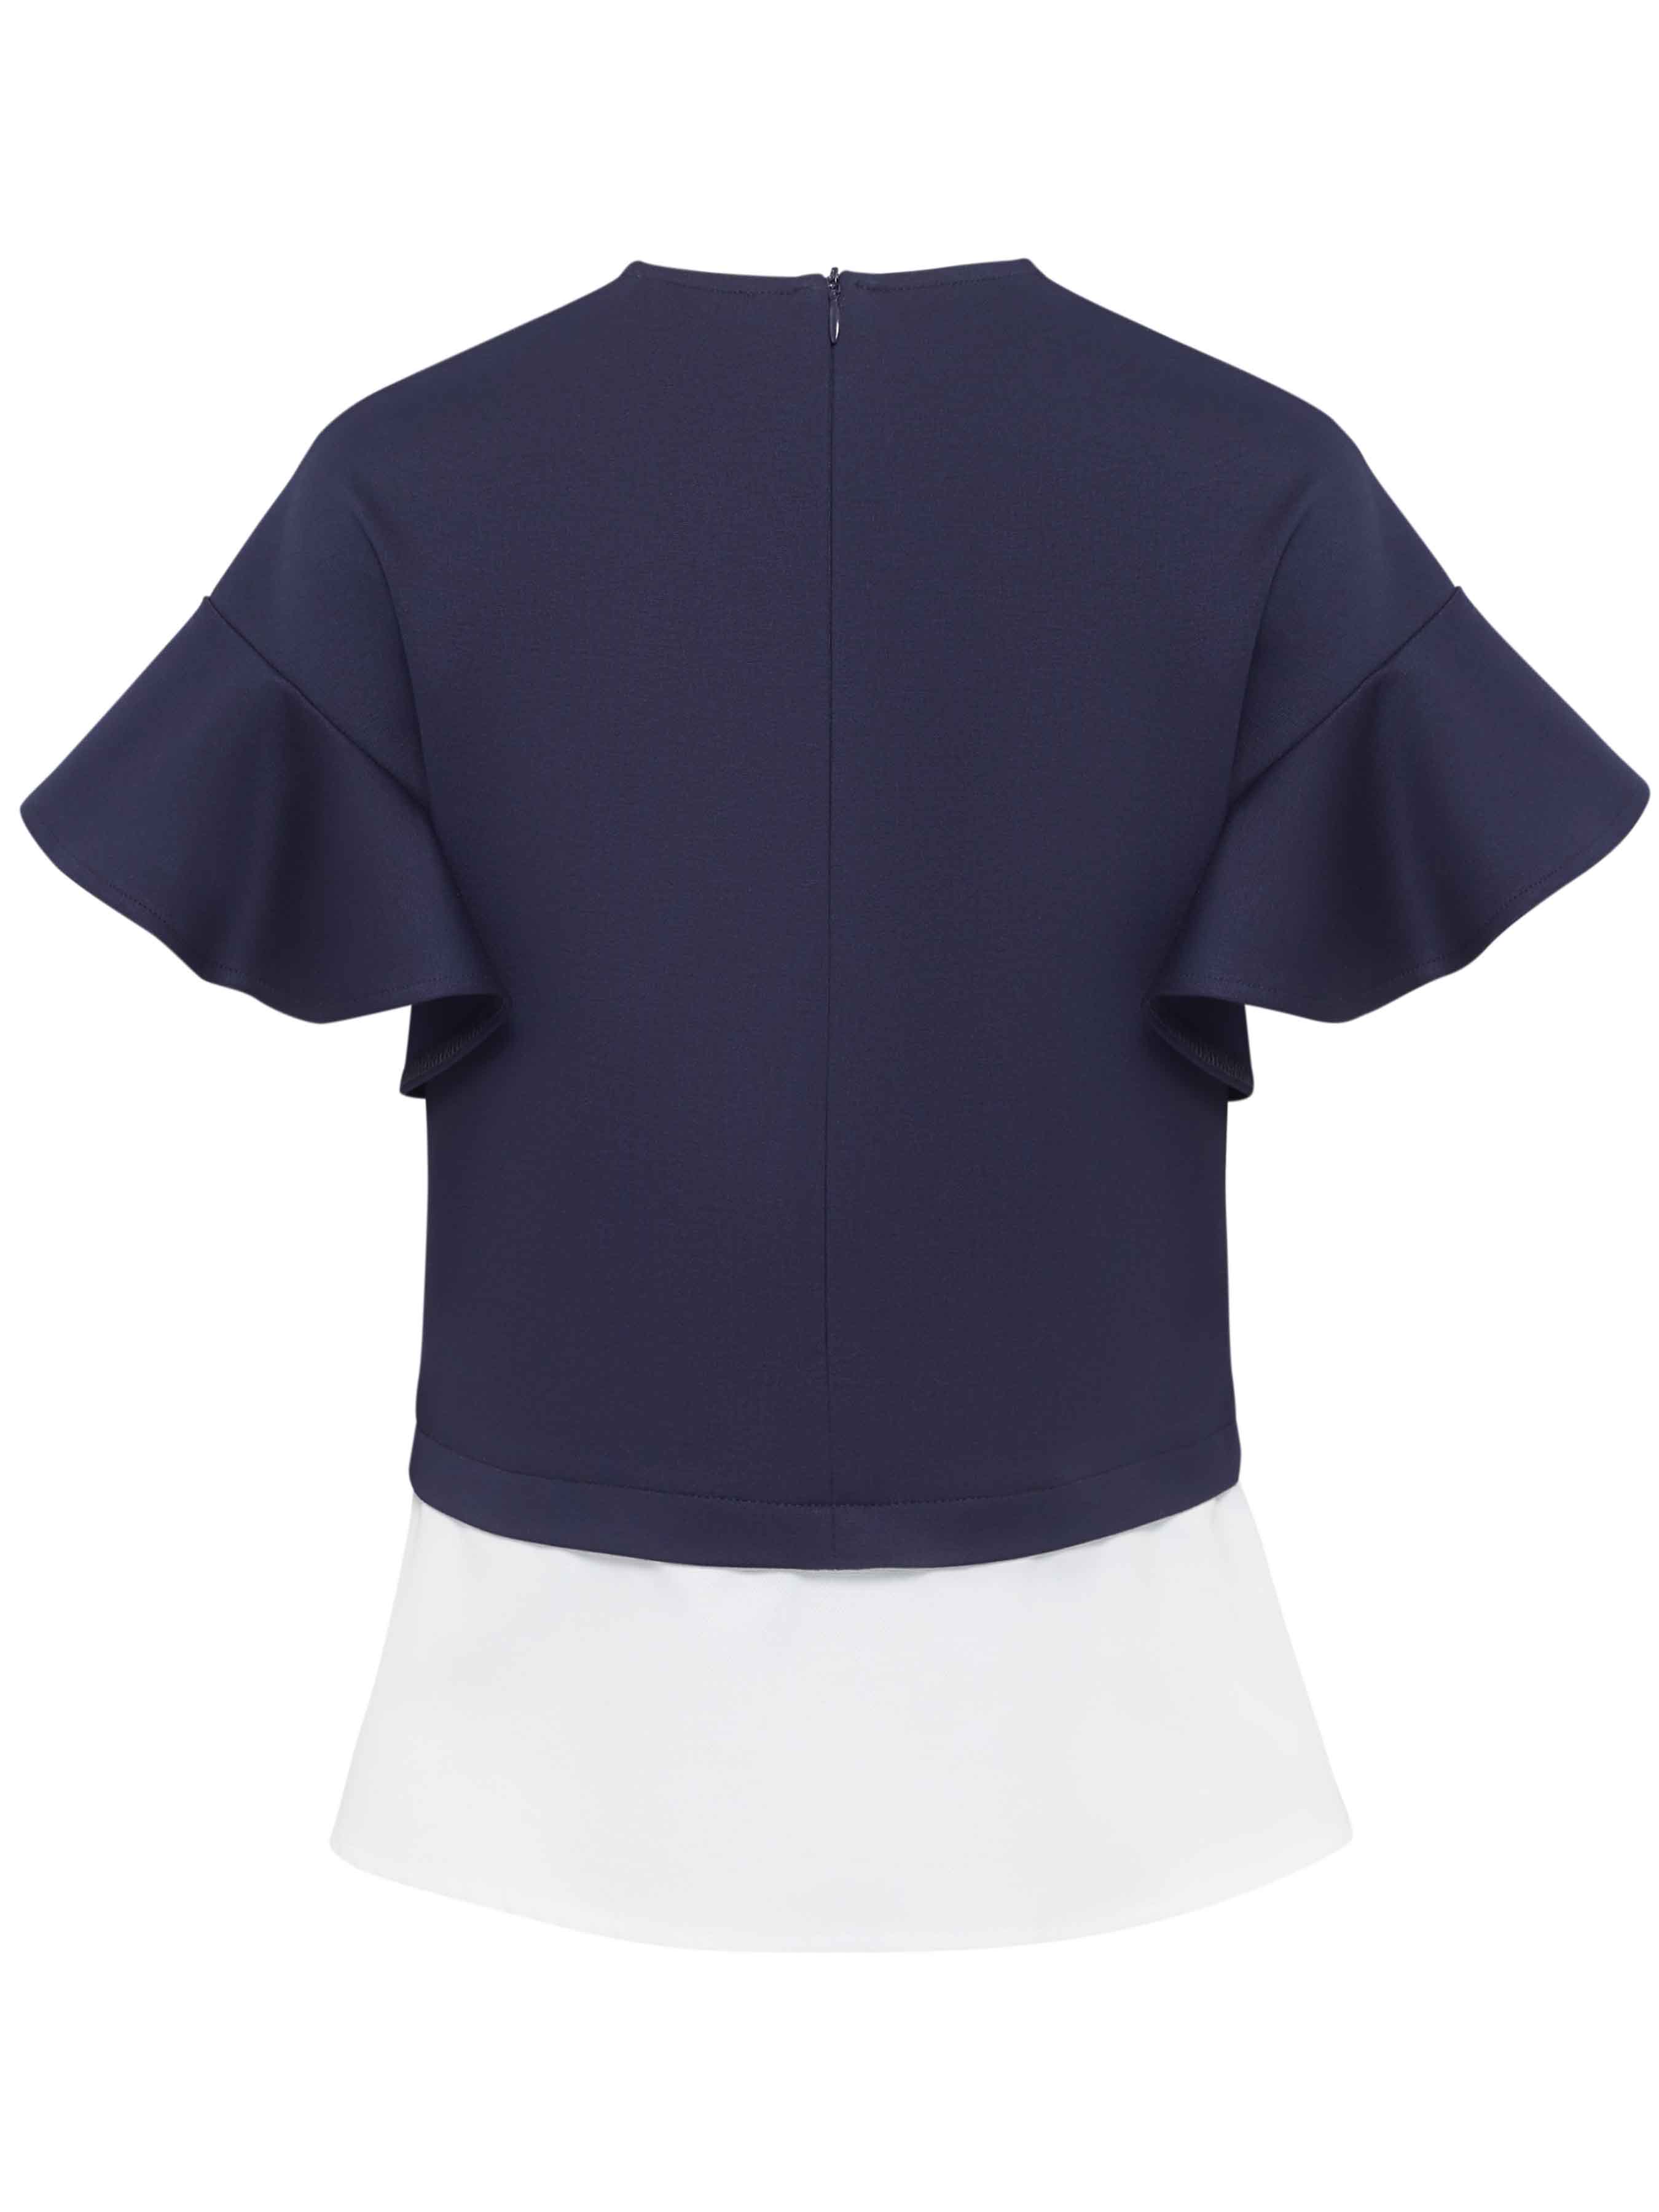 Школьная блузка для девочка сине-белая 12558